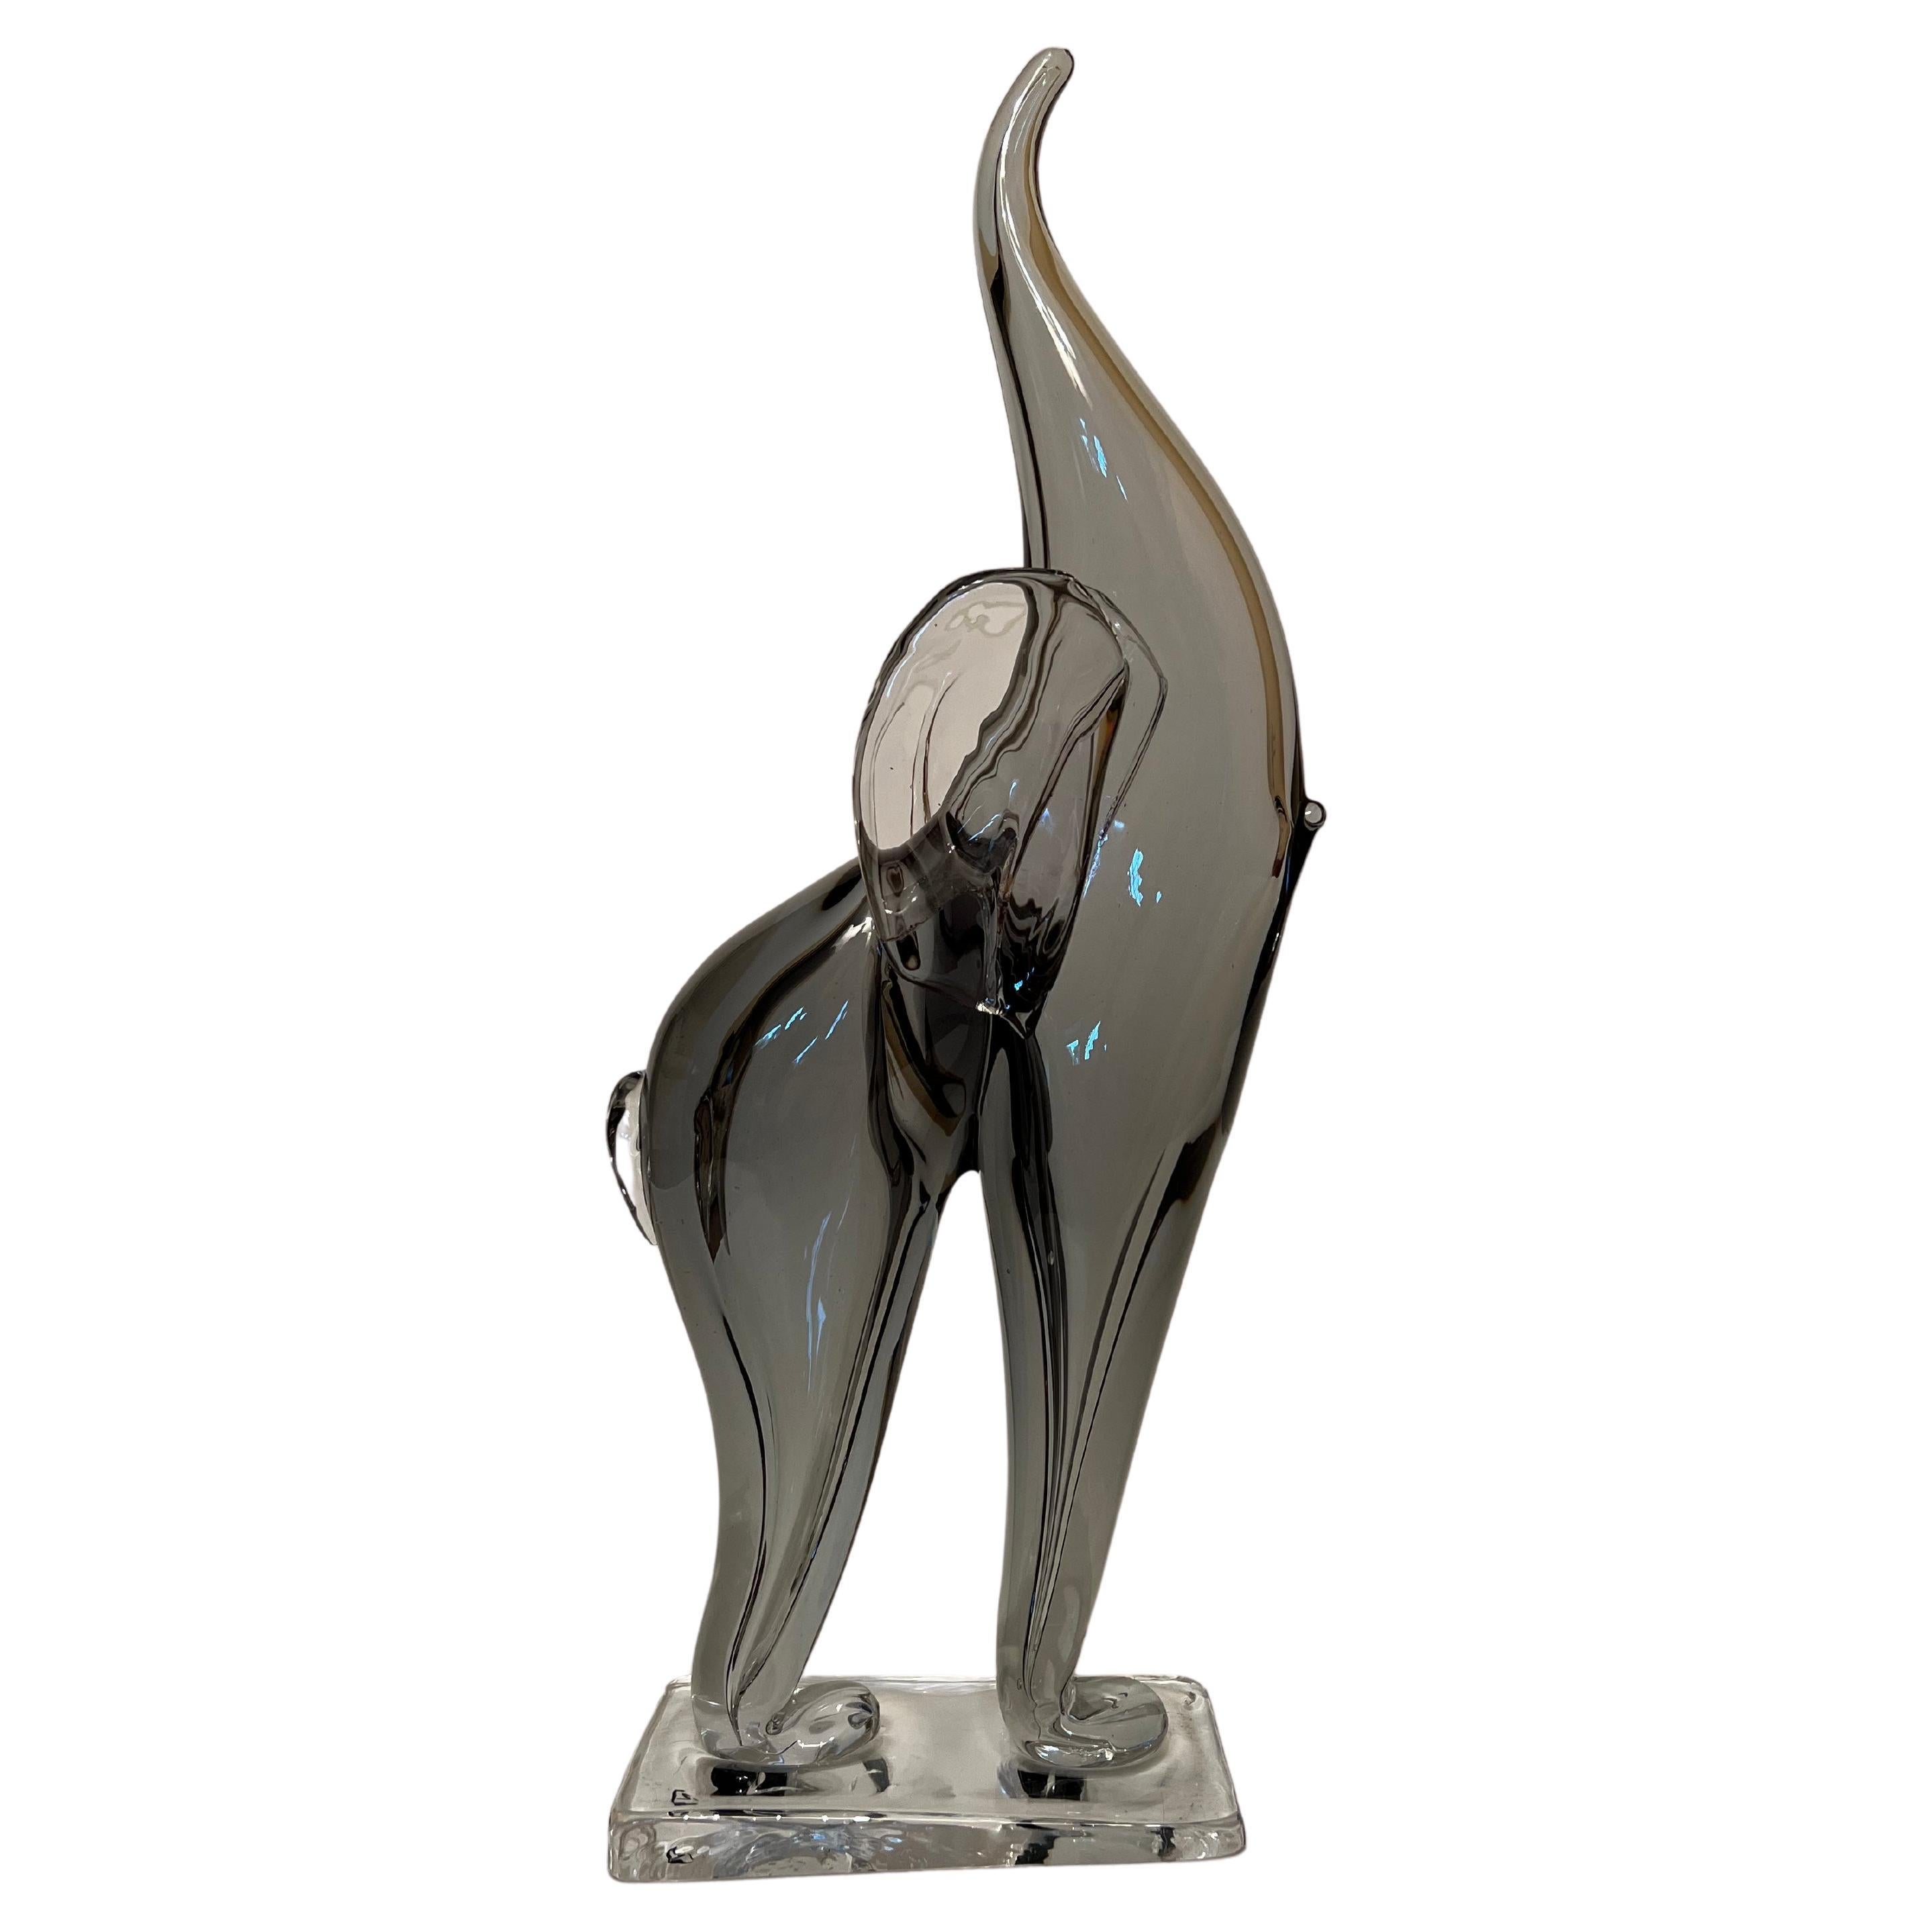 Nasonmoretti 1950s Elephant Statue in Murano Glass For Sale